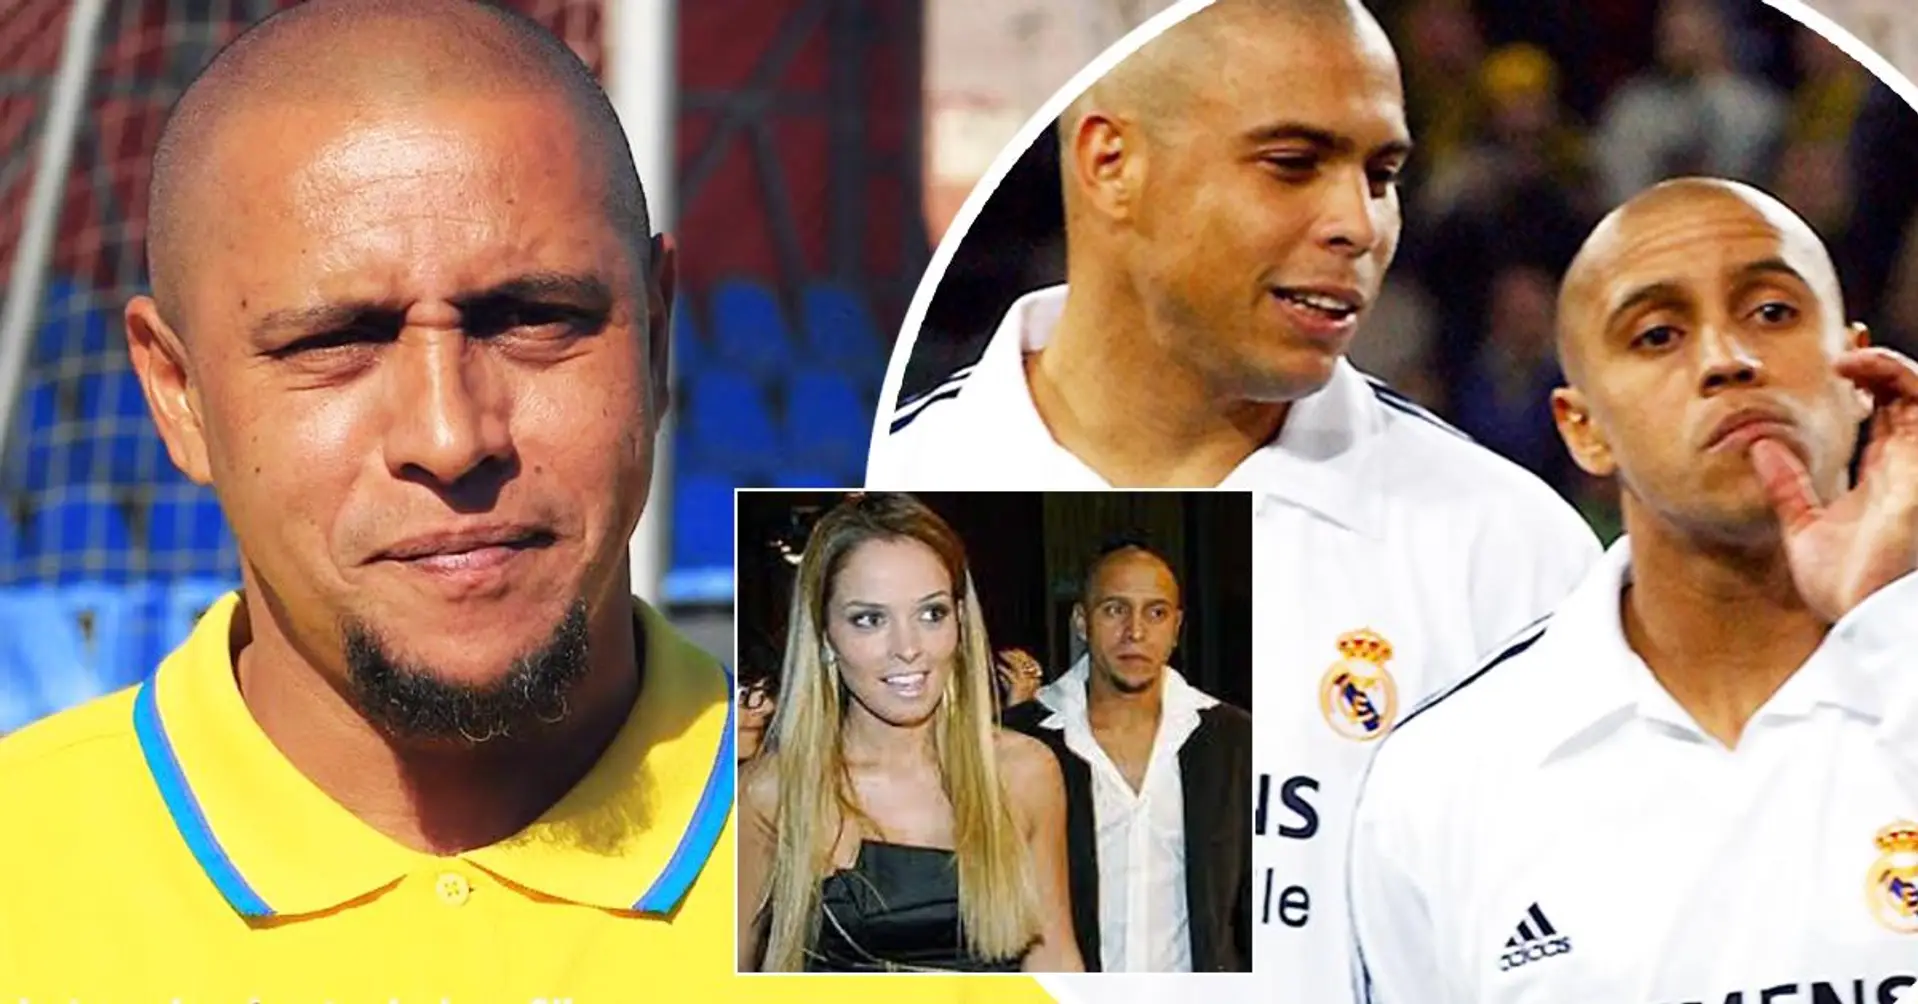 Roberto Carlos: "Ho dormito con Ronaldo più che con mia moglie. Ho fatto tutto con lui. Con e senza limiti"